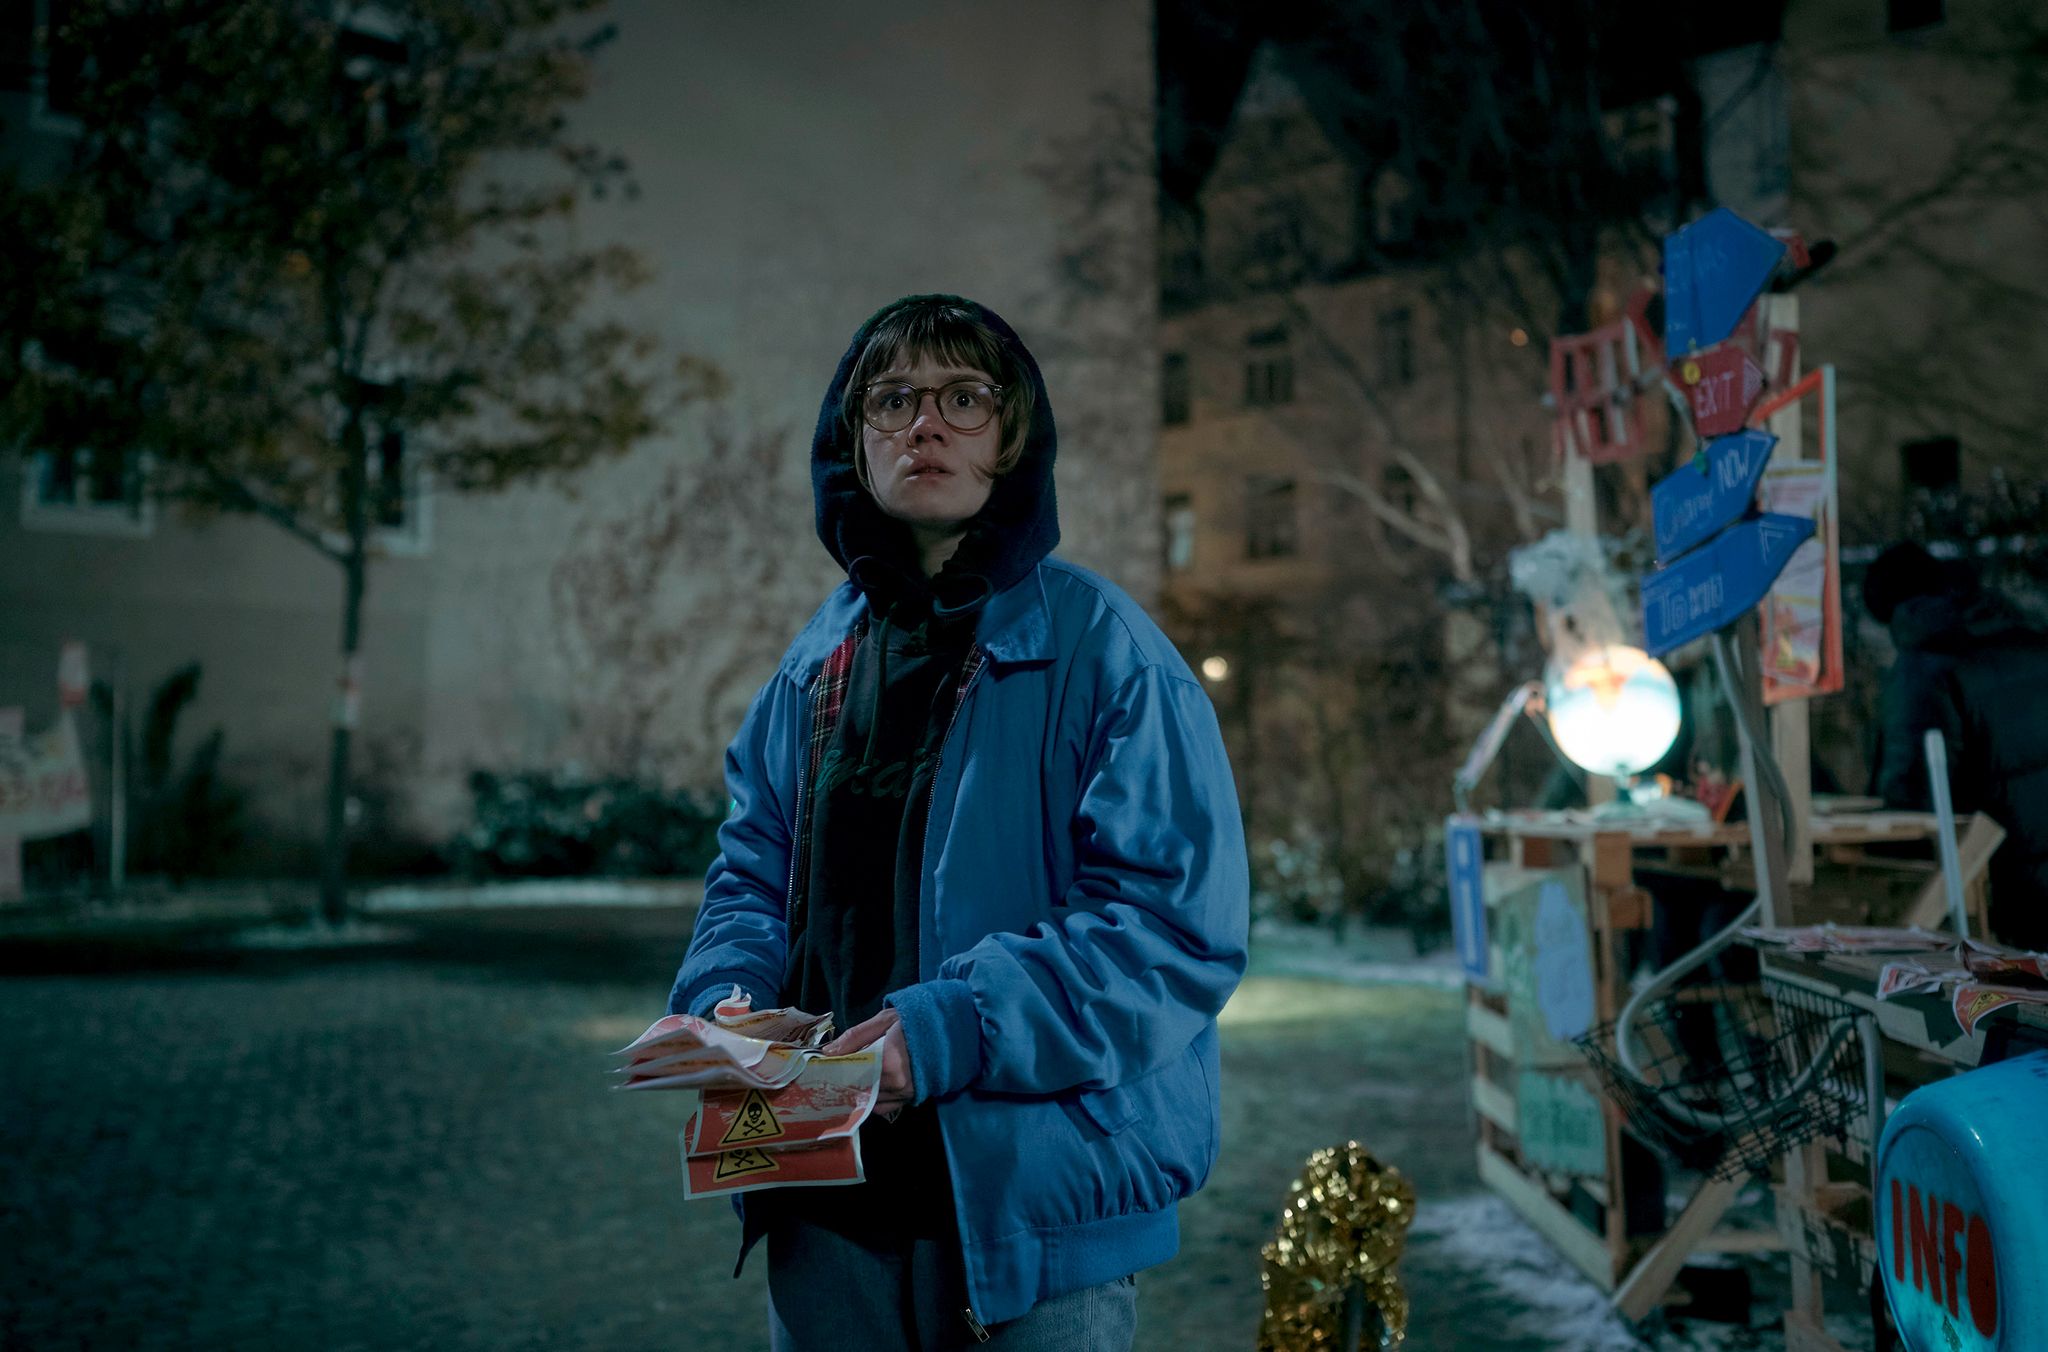 Luise Kogan (Lea Drinda) verteilt Flyer
in einer Szene der Serie «Wer wir sind».